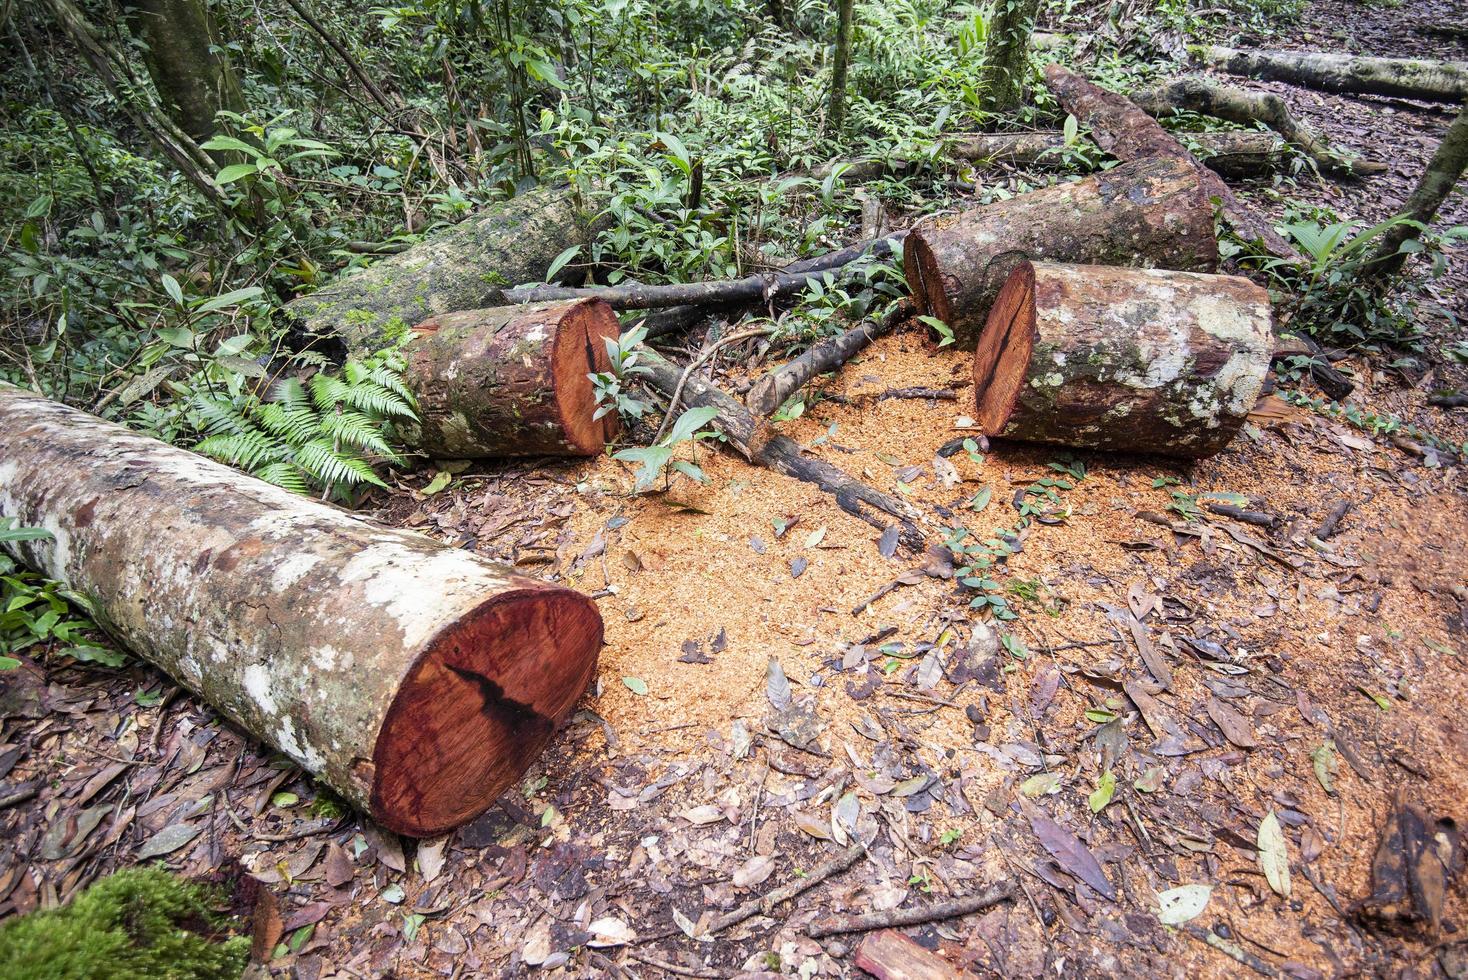 Abholzung Umweltproblem mit Kettensäge in Aktion Holz schneiden - Holzsäge Holzstämme Baum im Regenwald Natur foto